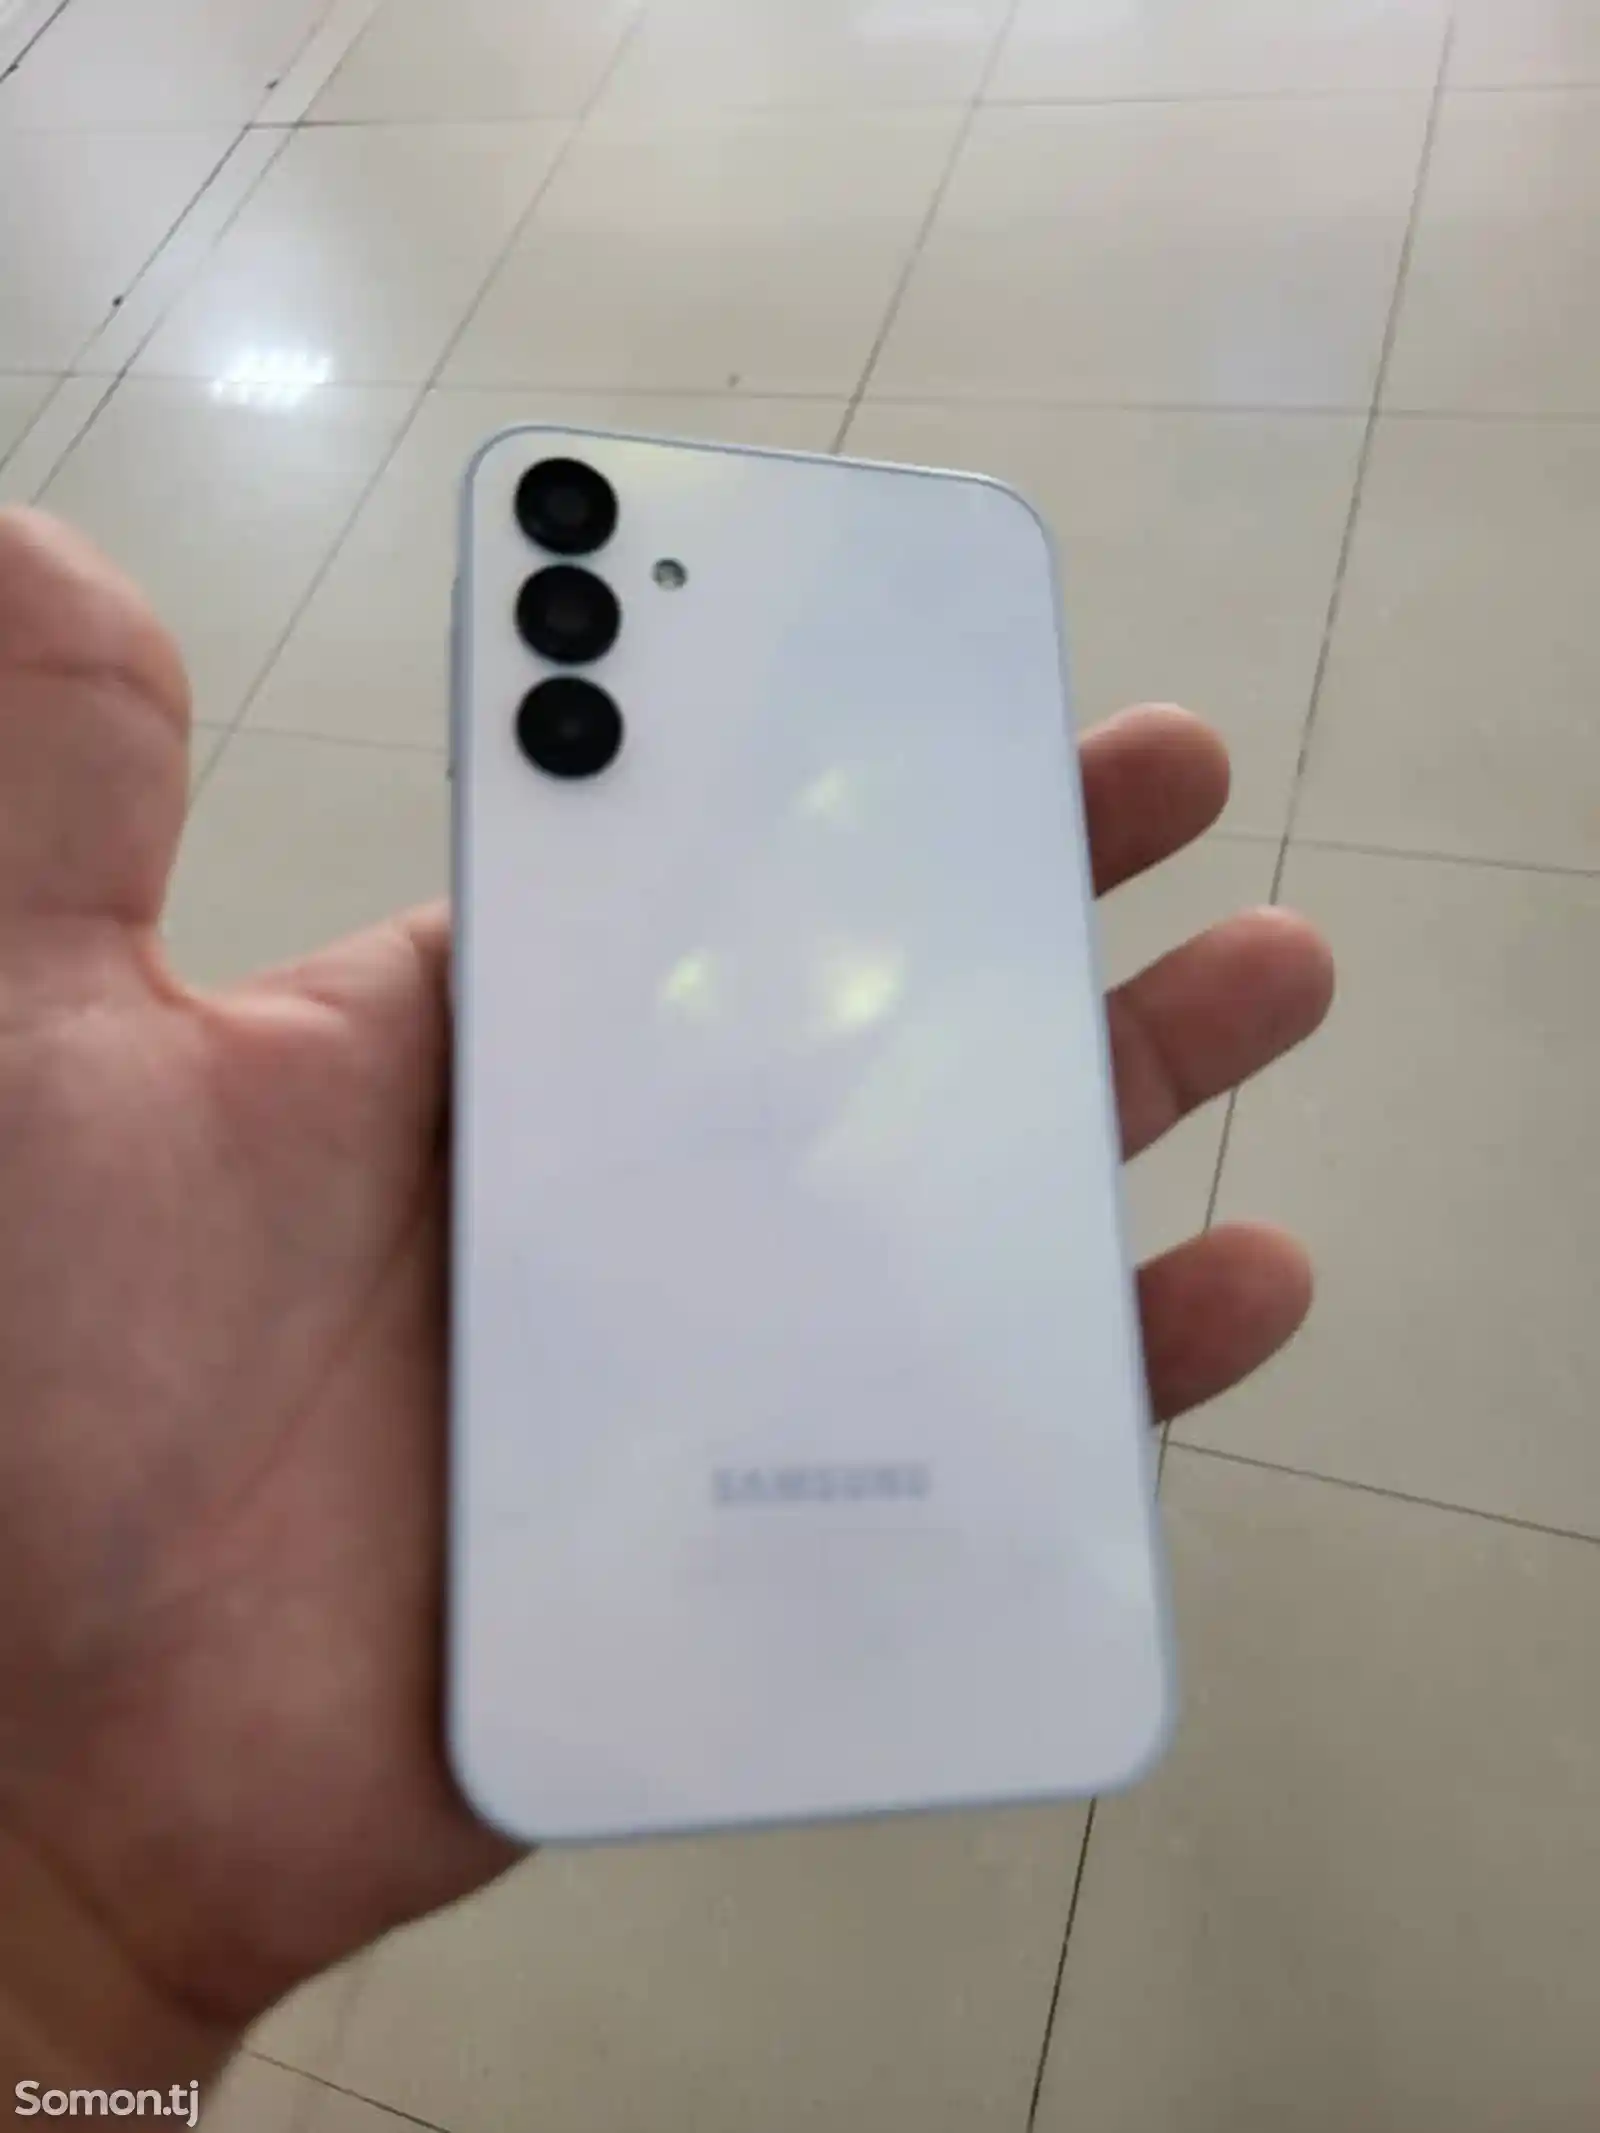 Samsung Galaxy A15-2